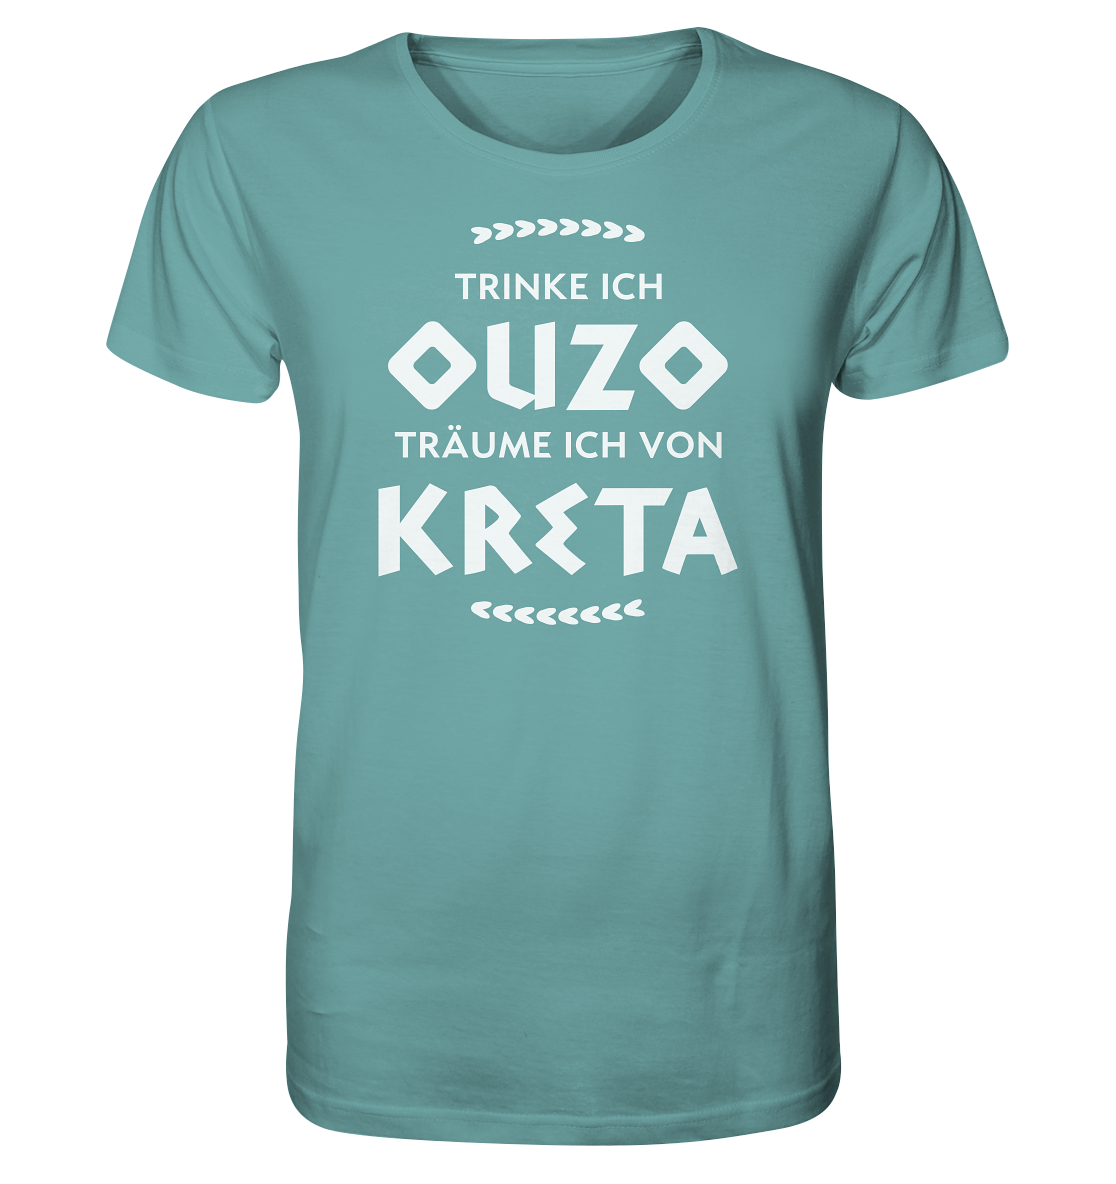 Trinke ich Ouzo träume ich von Kreta - Organic Shirt